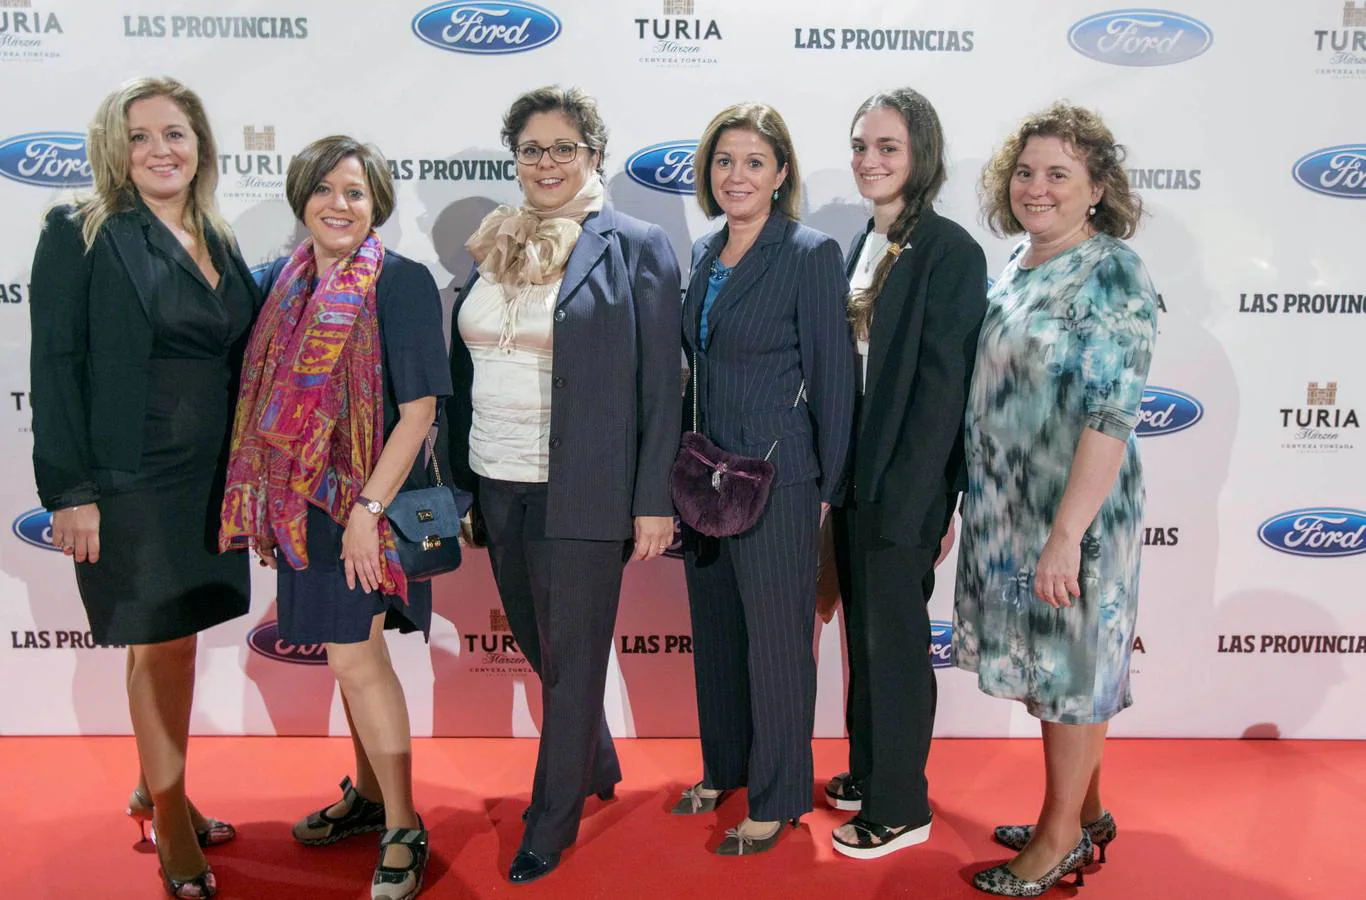 De izquierda a derecha: Azucena Ortega, Francisca Ortega, María Ángeles Ortega, Mar Gómez, Avelina Ortega y María José Ortega, todas ellas de Power Electronics.